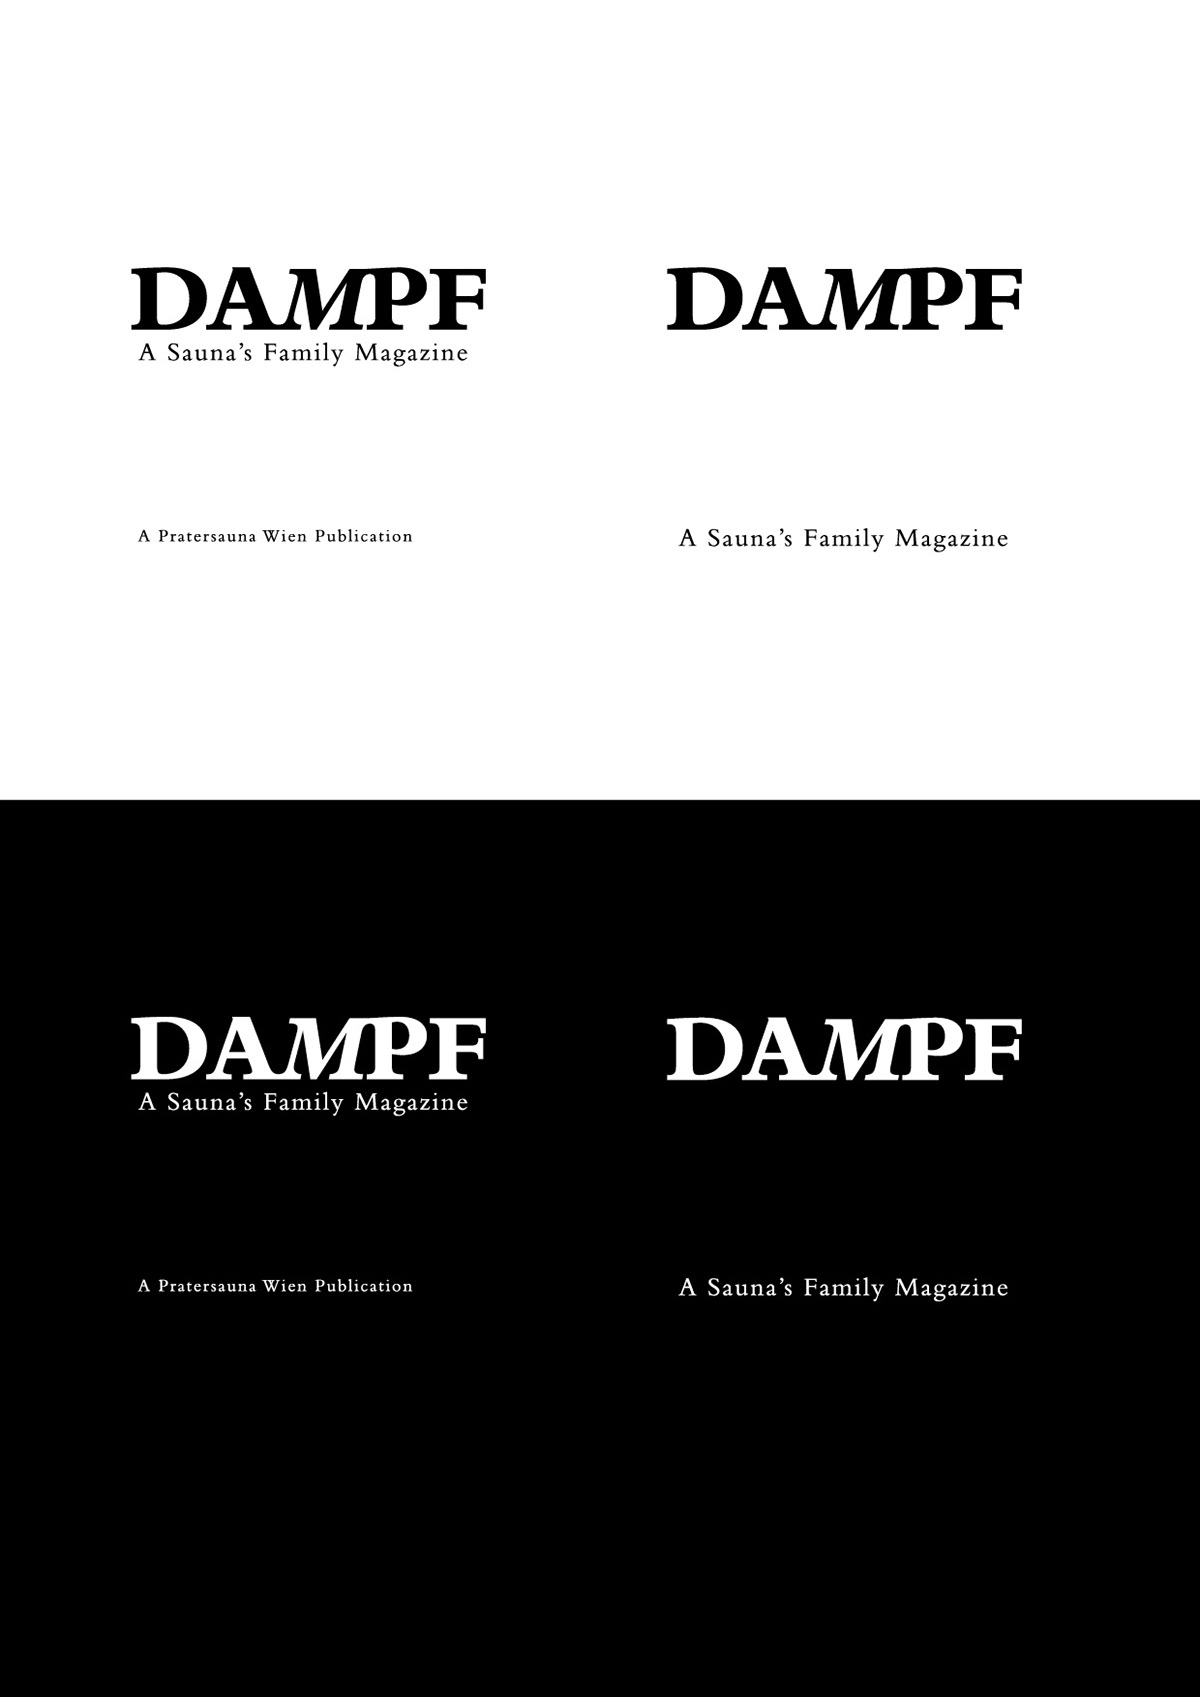 dampf magazine Pratersauna vienna art club